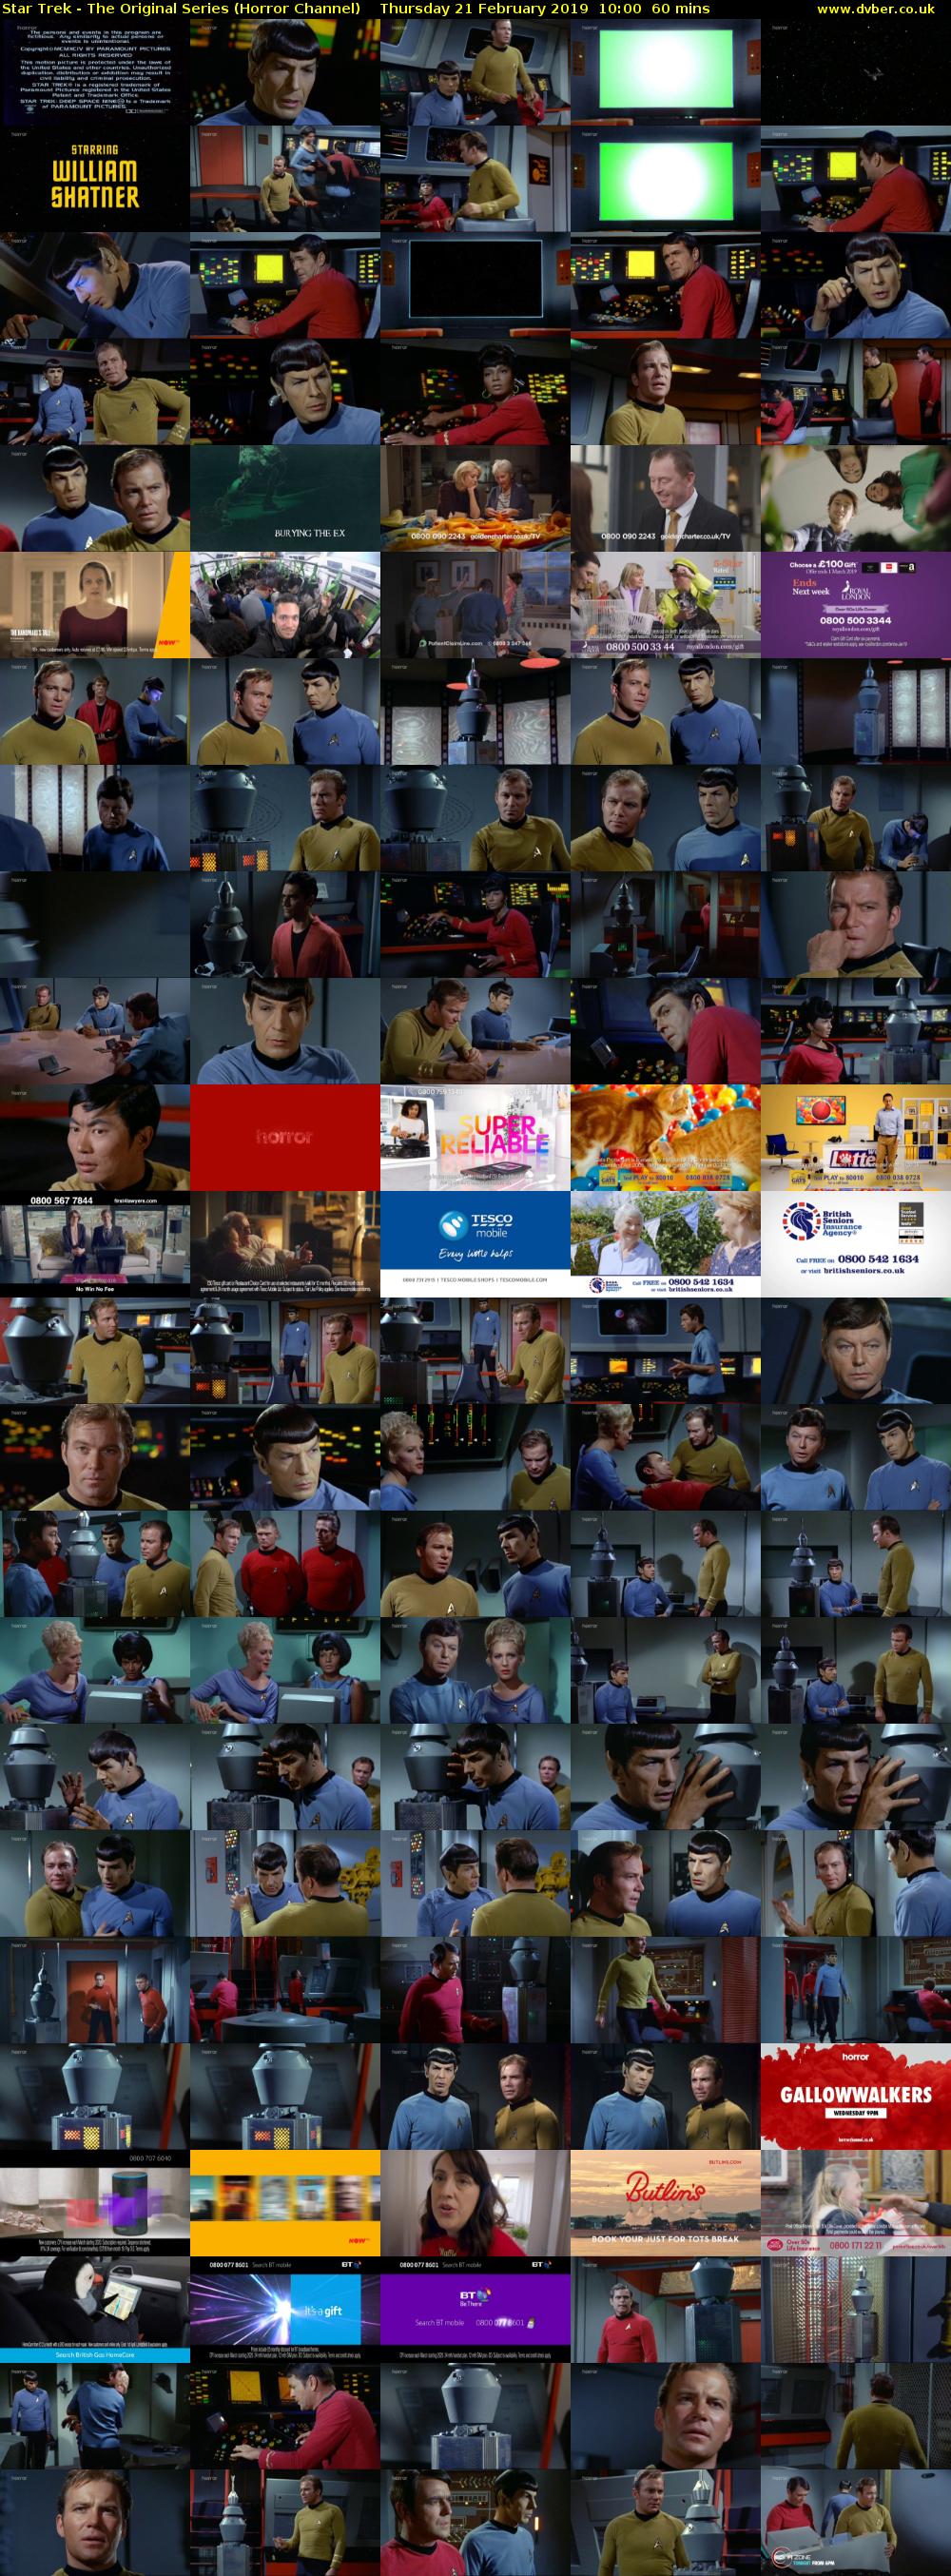 Star Trek - The Original Series (Horror Channel) Thursday 21 February 2019 10:00 - 11:00